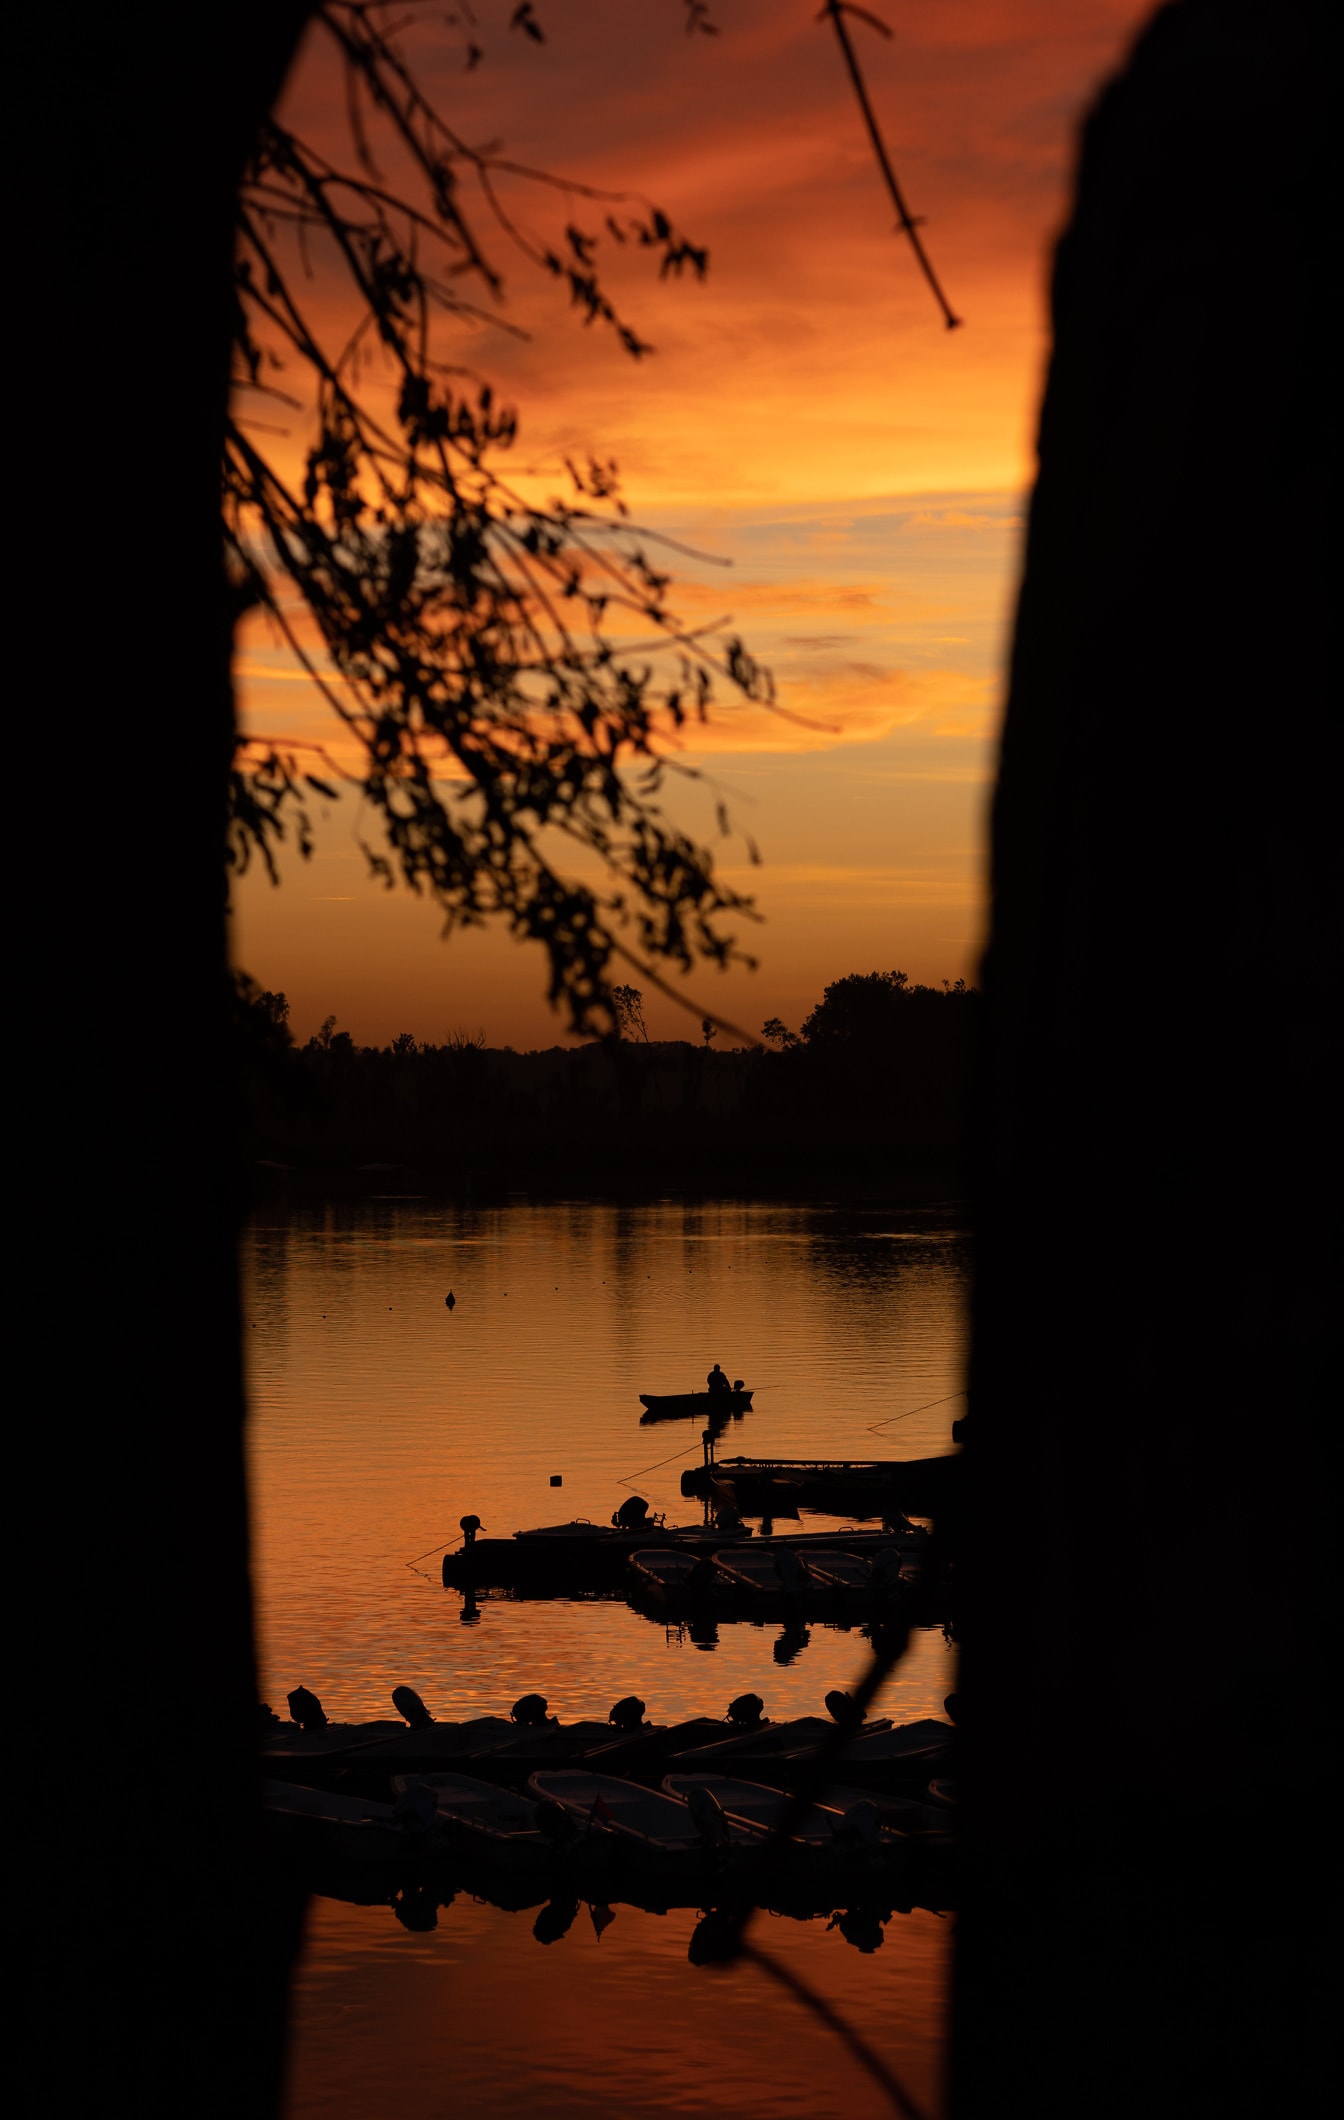 ภาพเงาของเรือประมงในระยะไกลในพระอาทิตย์ตกสีเหลืองส้มริมทะเลสาบ